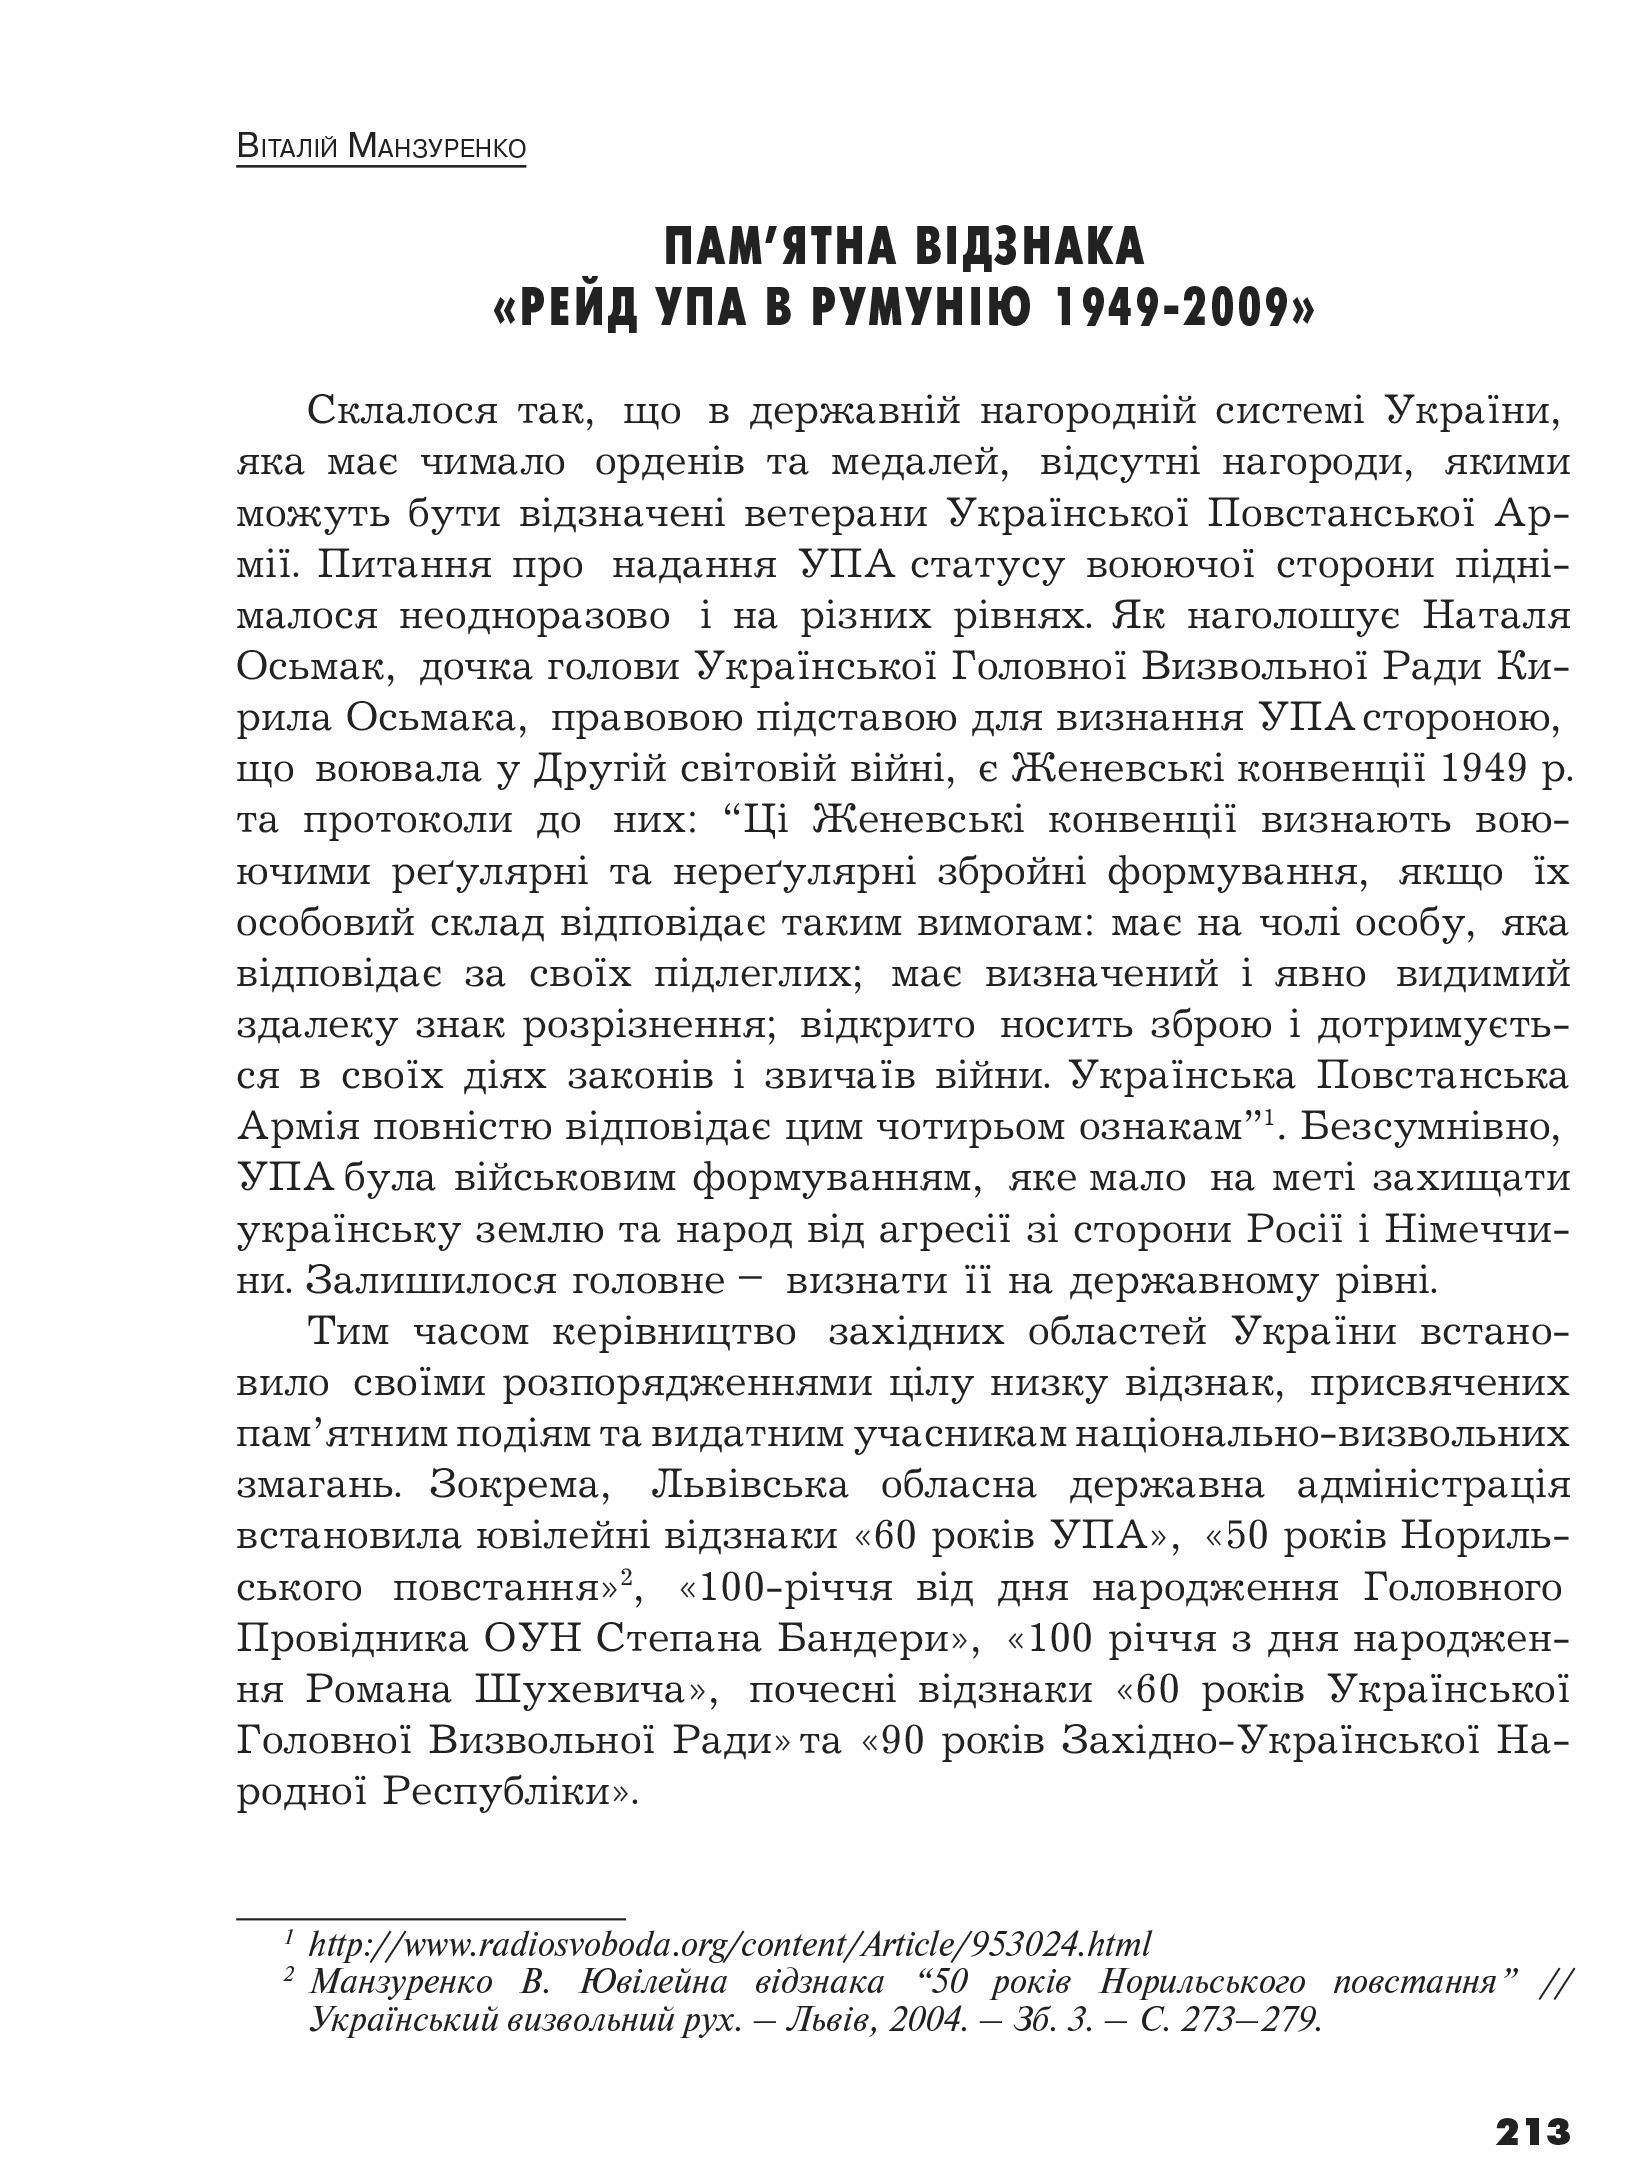 Український визвольний рух №14, ст. 213 - 218